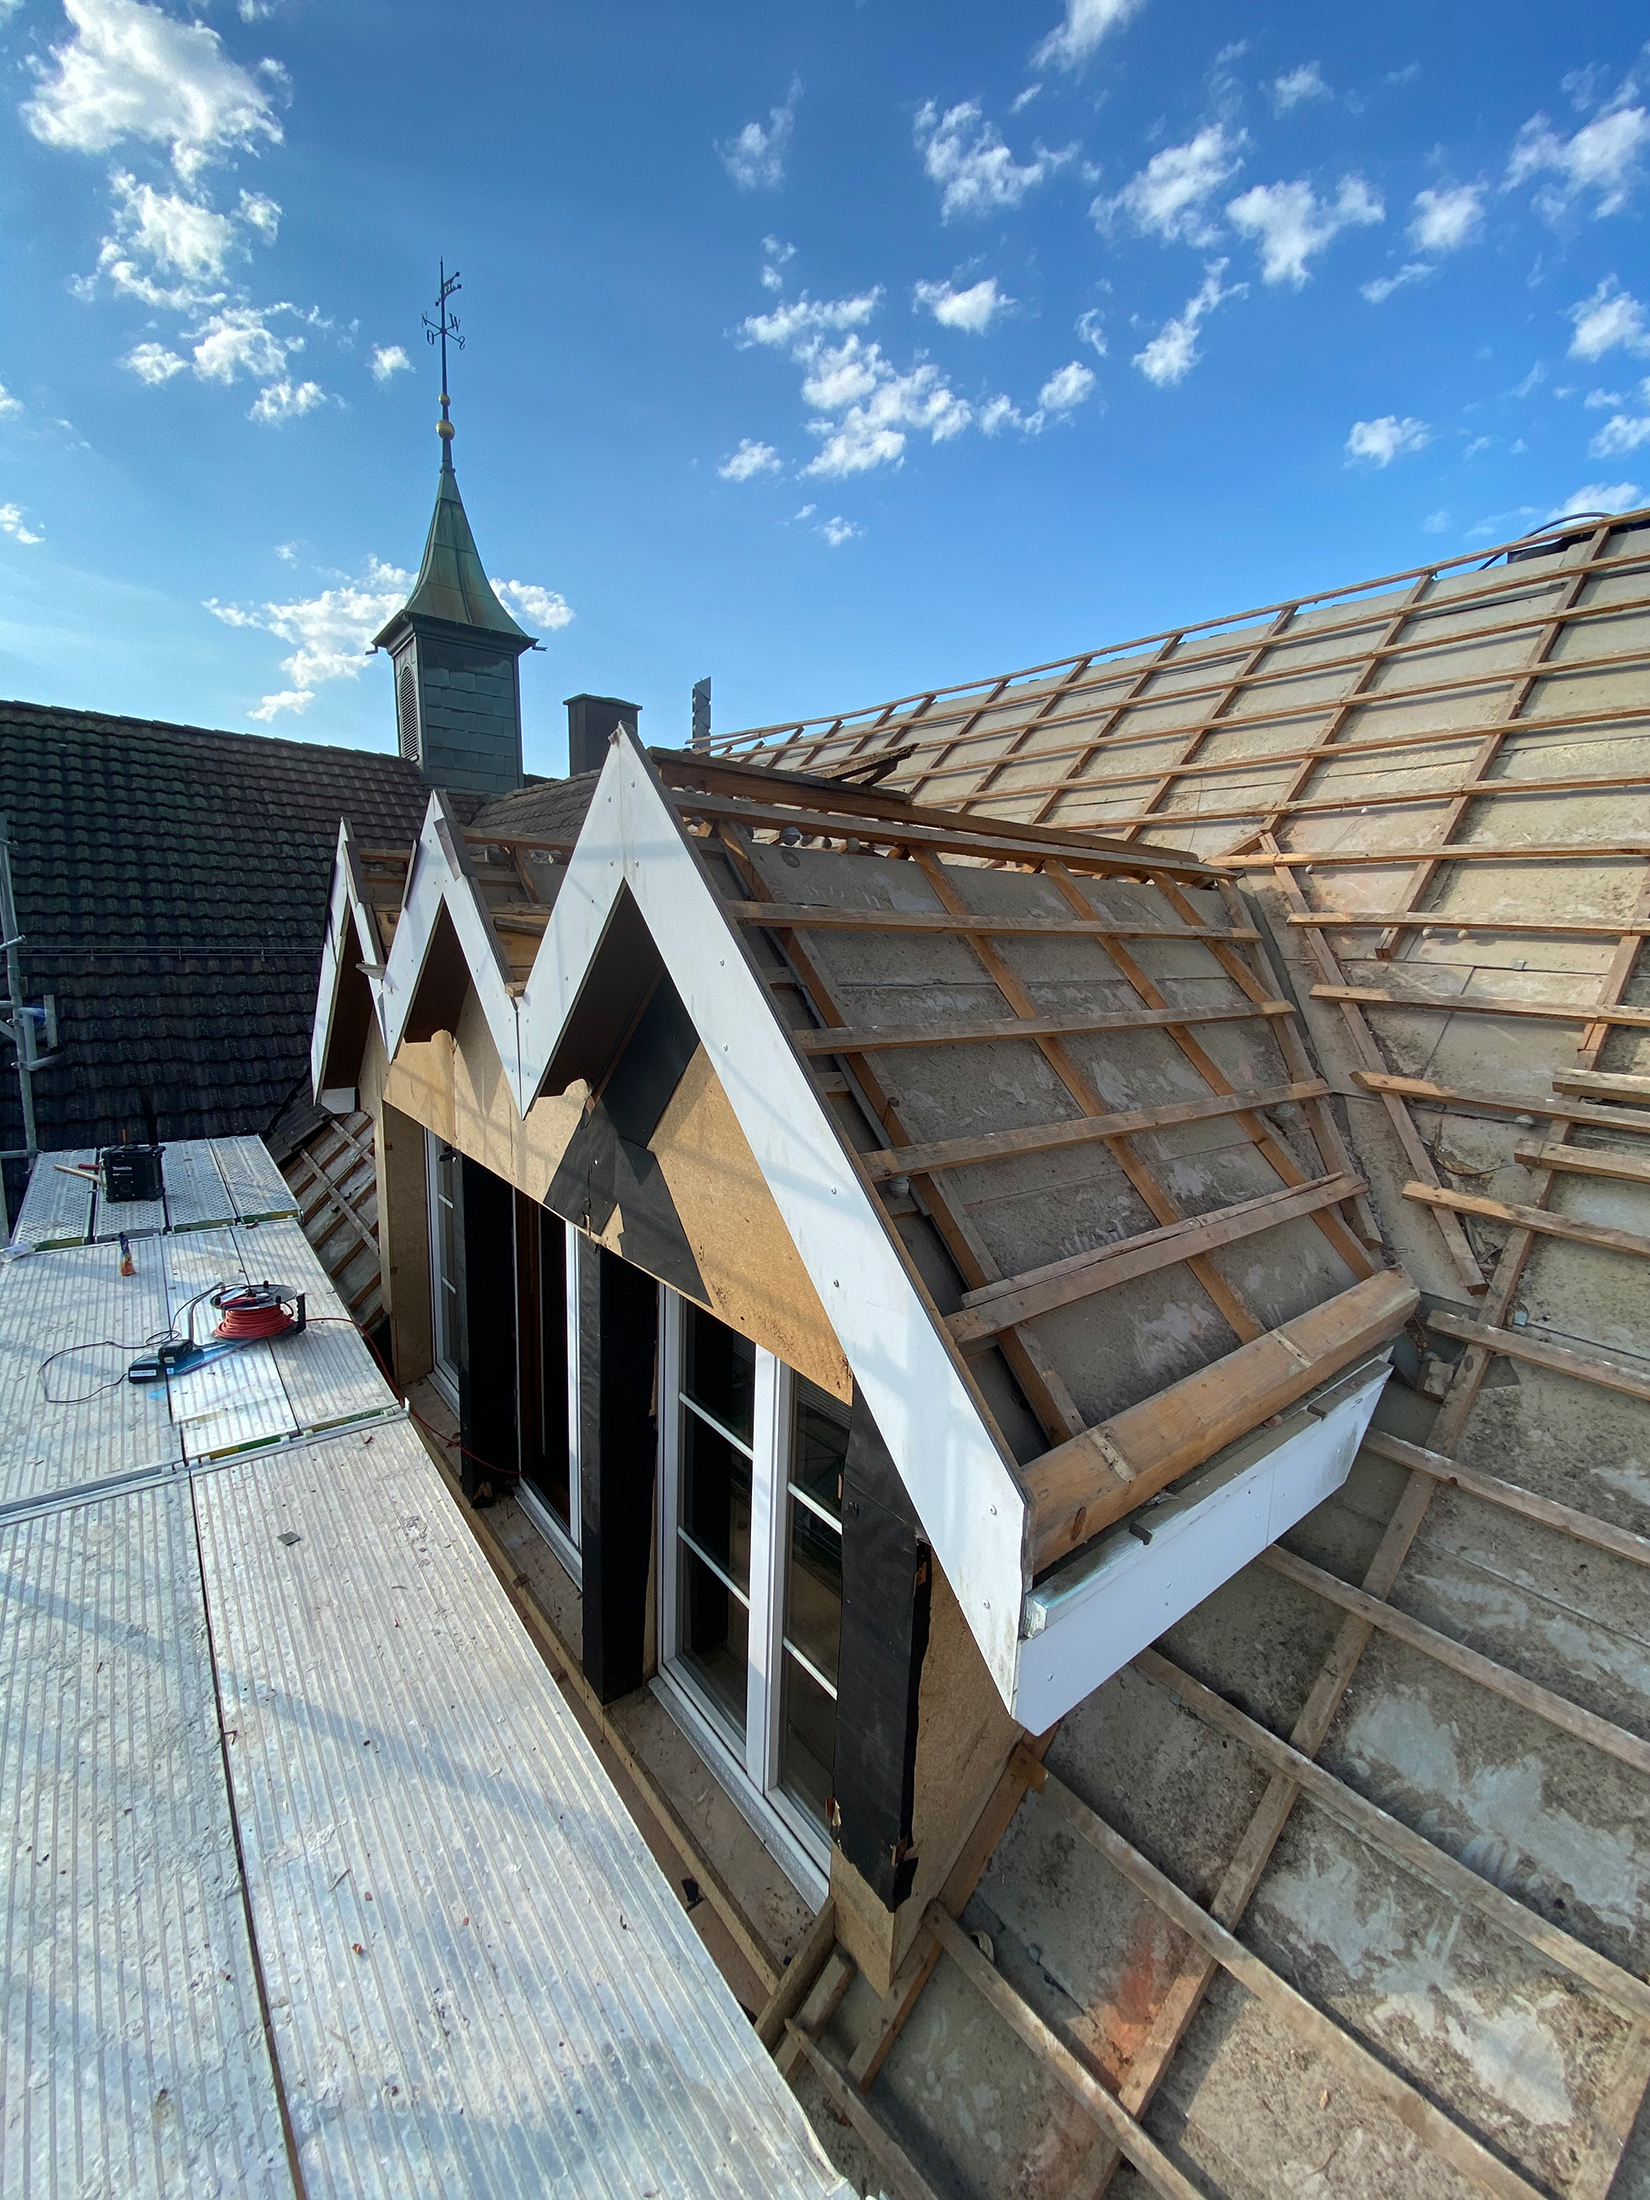 13.07.2020 - 25.07.2020
Nach Fertigstellung des Gerüsts wird mit der Dachhaut und der Dachgauben begonnen.